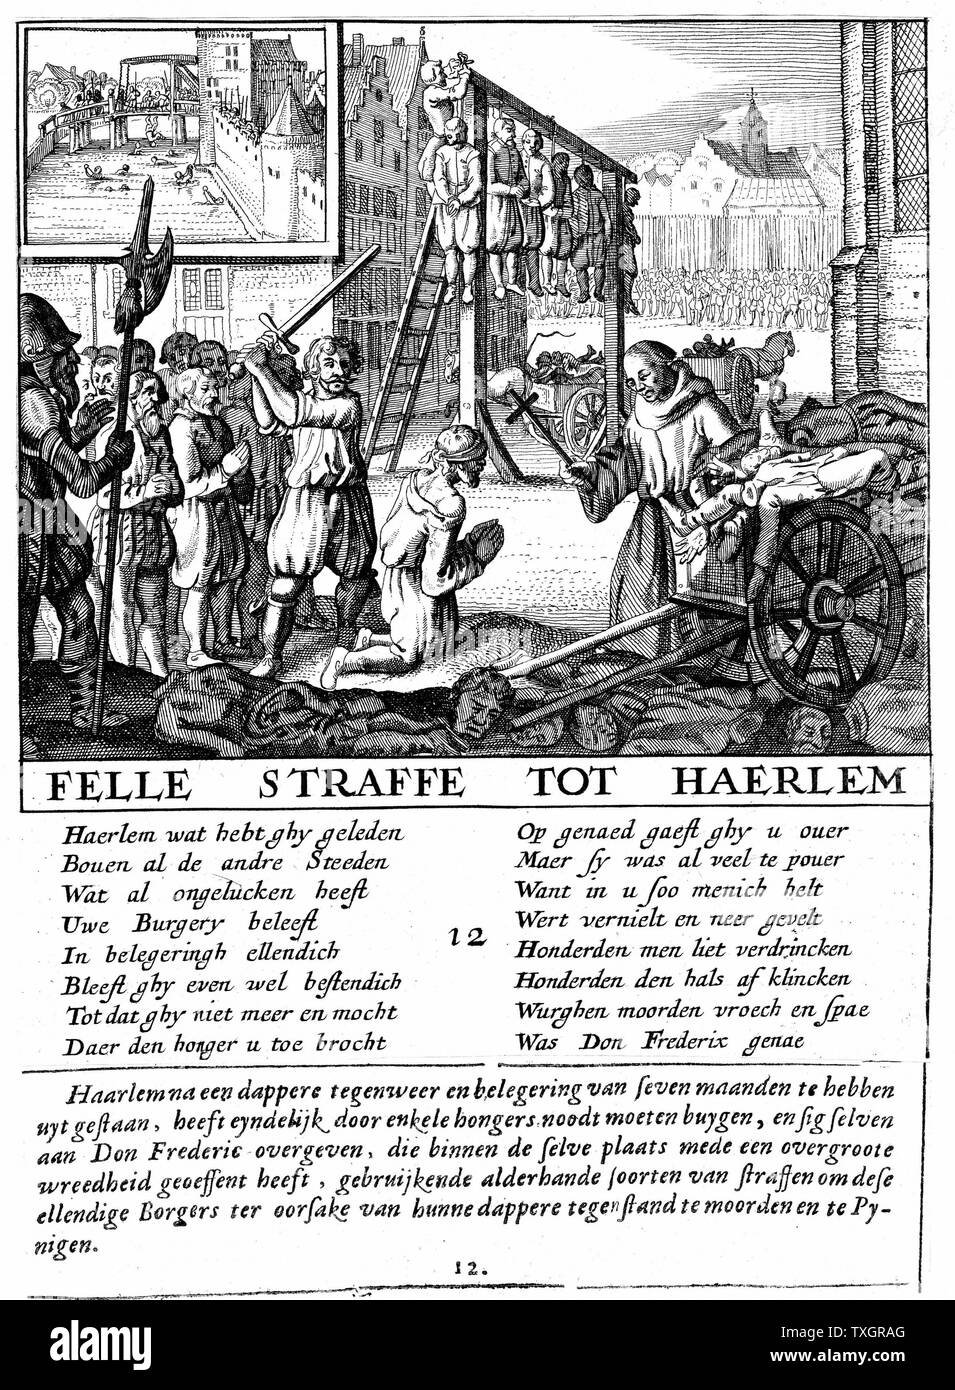 Les protestants dans les Pays-Bas d'être exécuté pour hérésie au cours de duc d'Alva's régimes répressifs (1567-73) la gravure sur cuivre. Banque D'Images